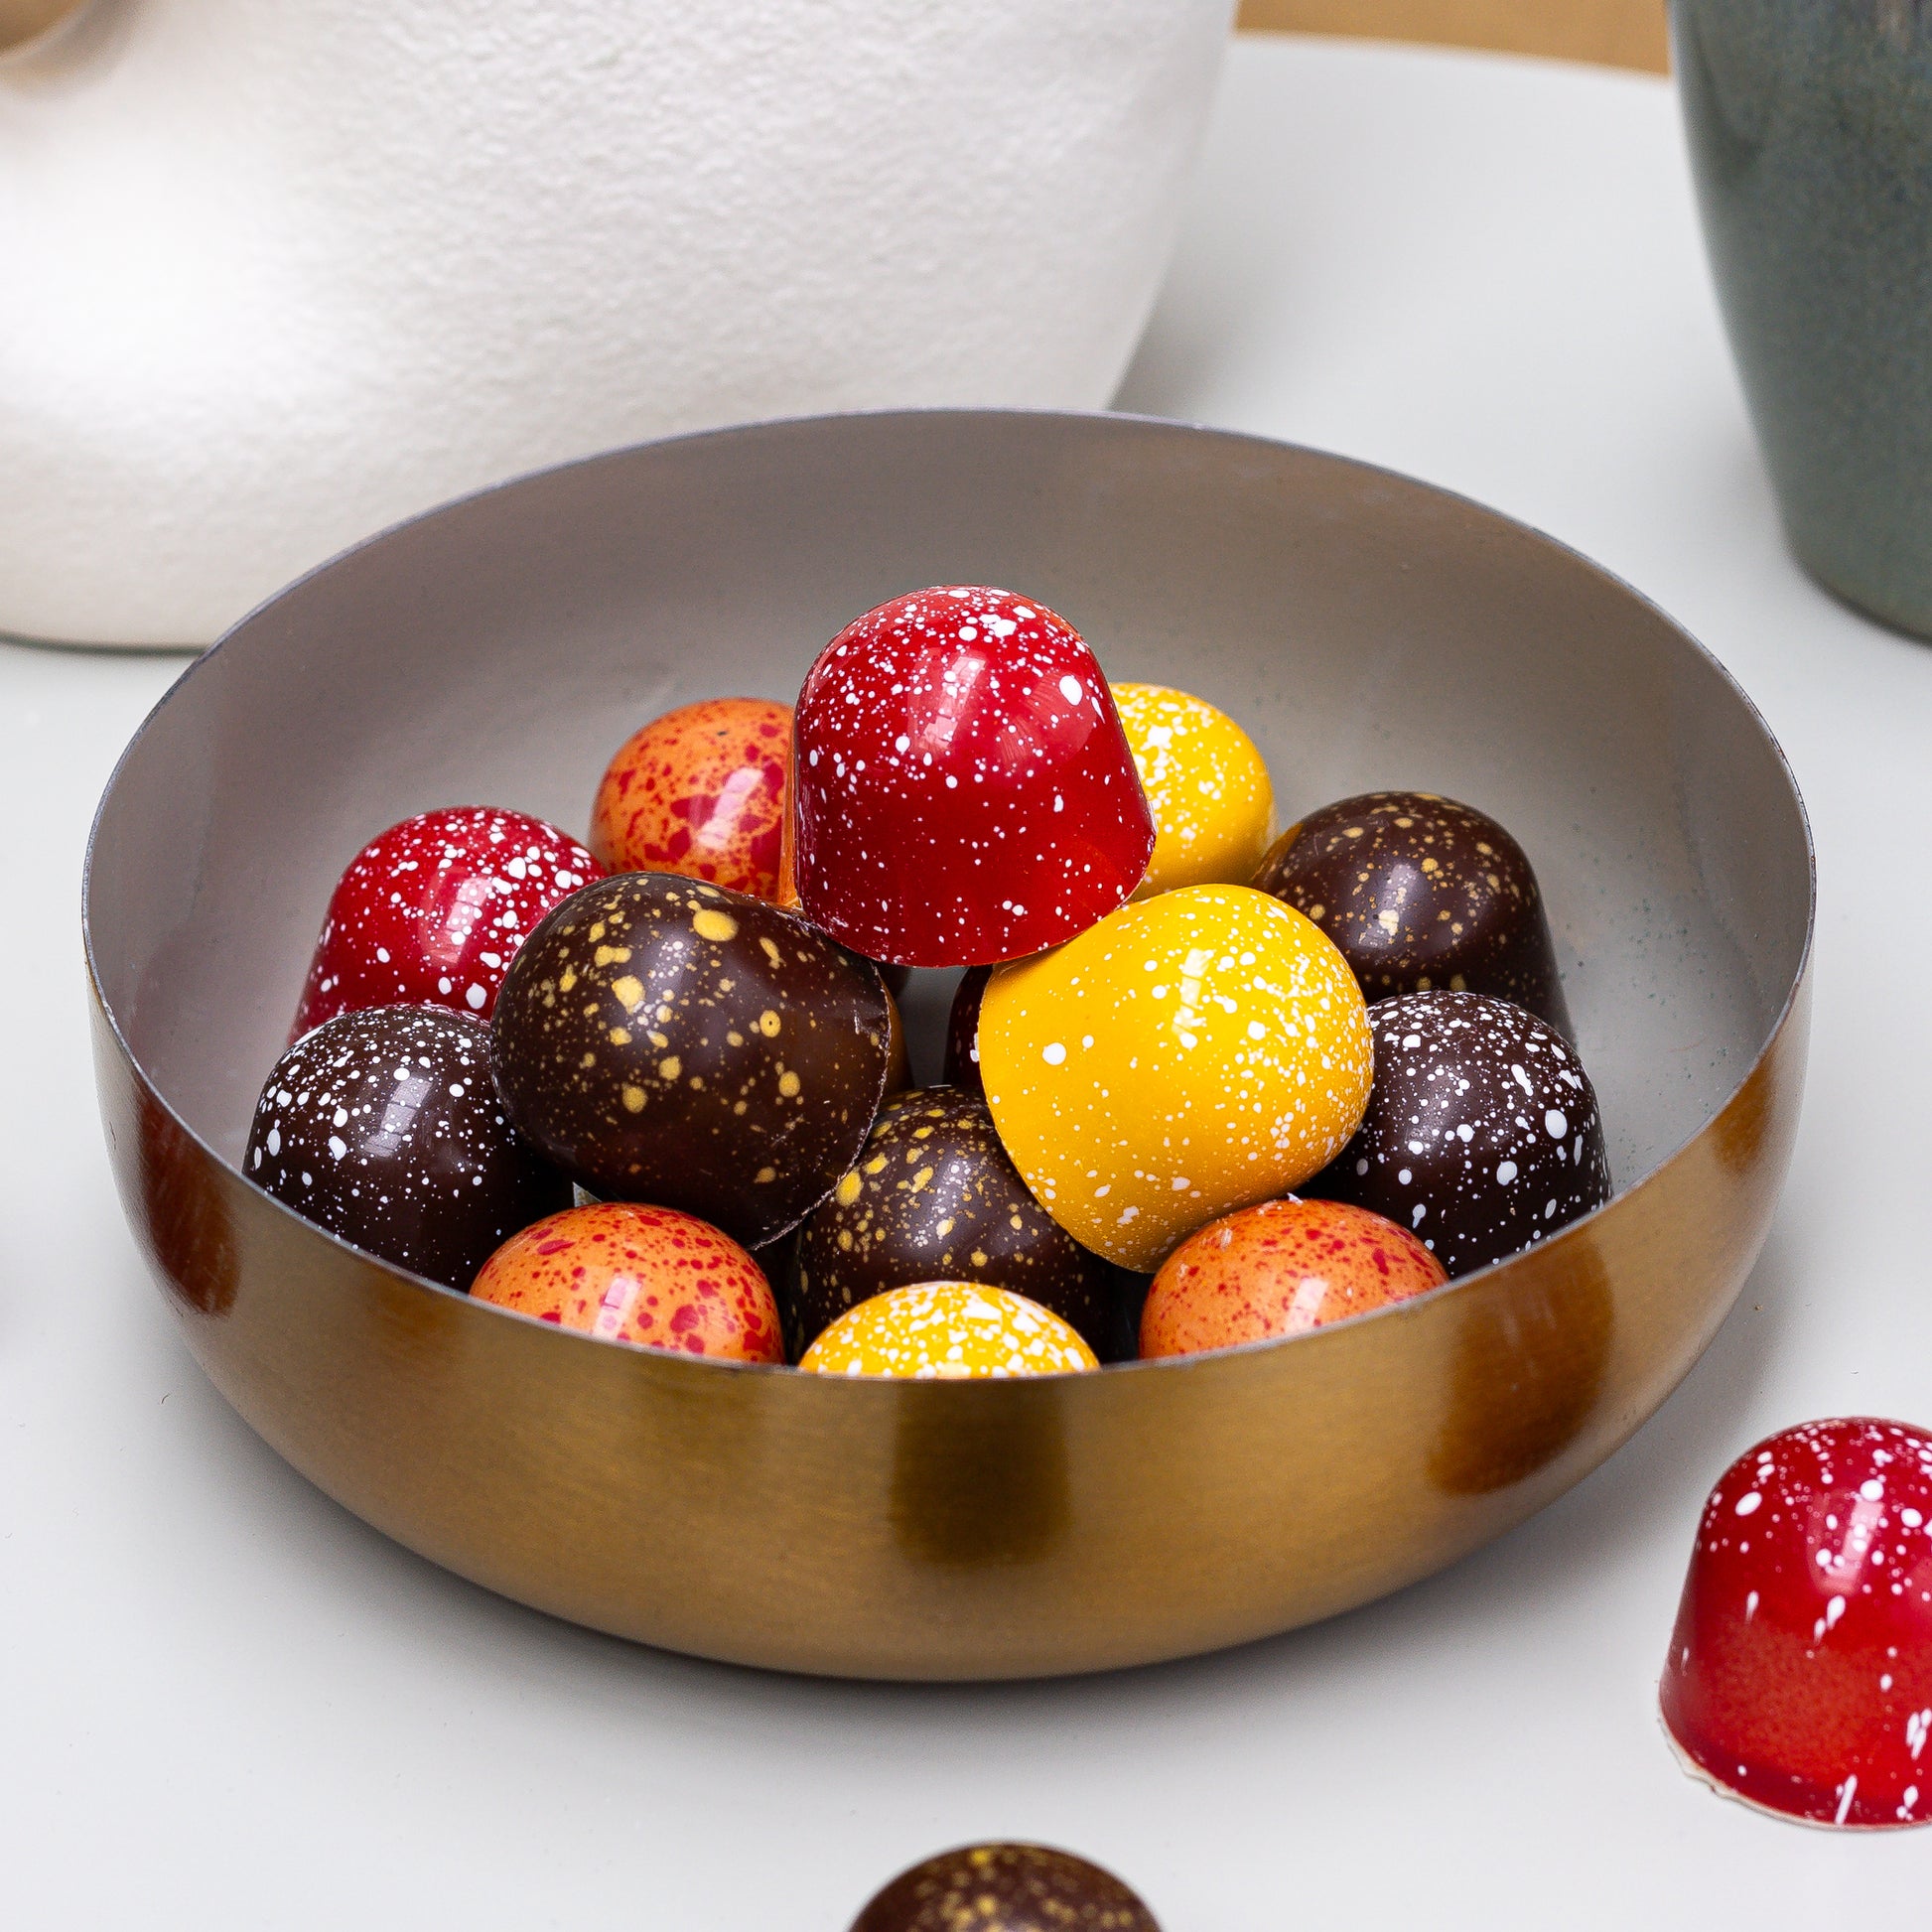 Hemelse Bonbons van De Browniehemel, kies zelf uw smaken!